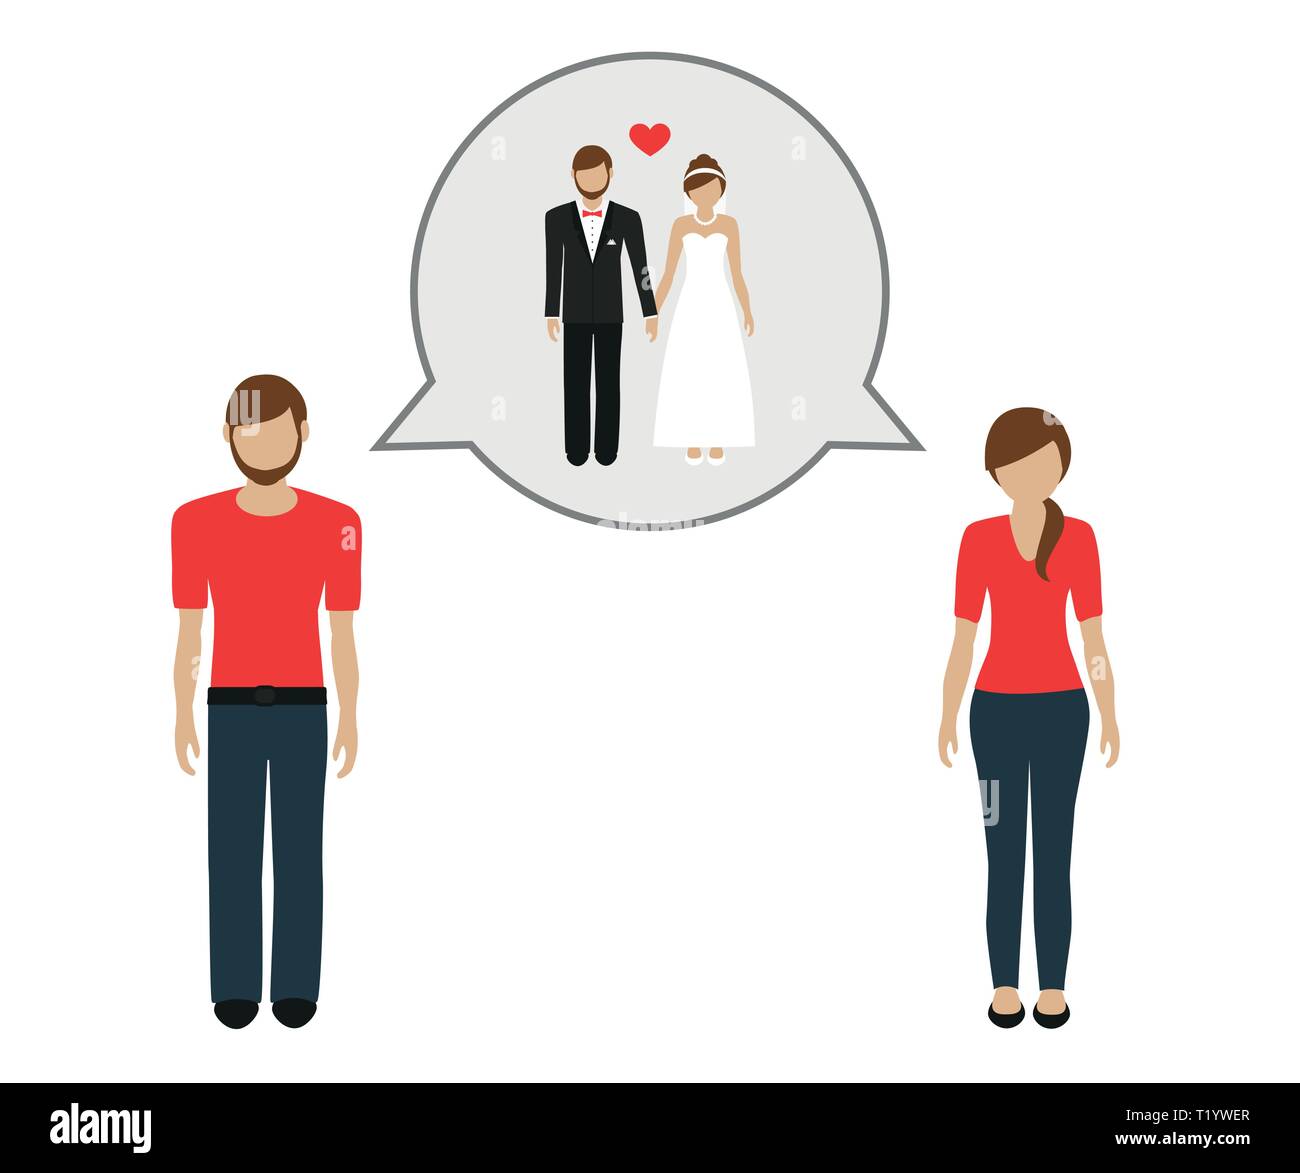 L'homme et la femme parlent de mariage illustration vecteur EPS10 Illustration de Vecteur